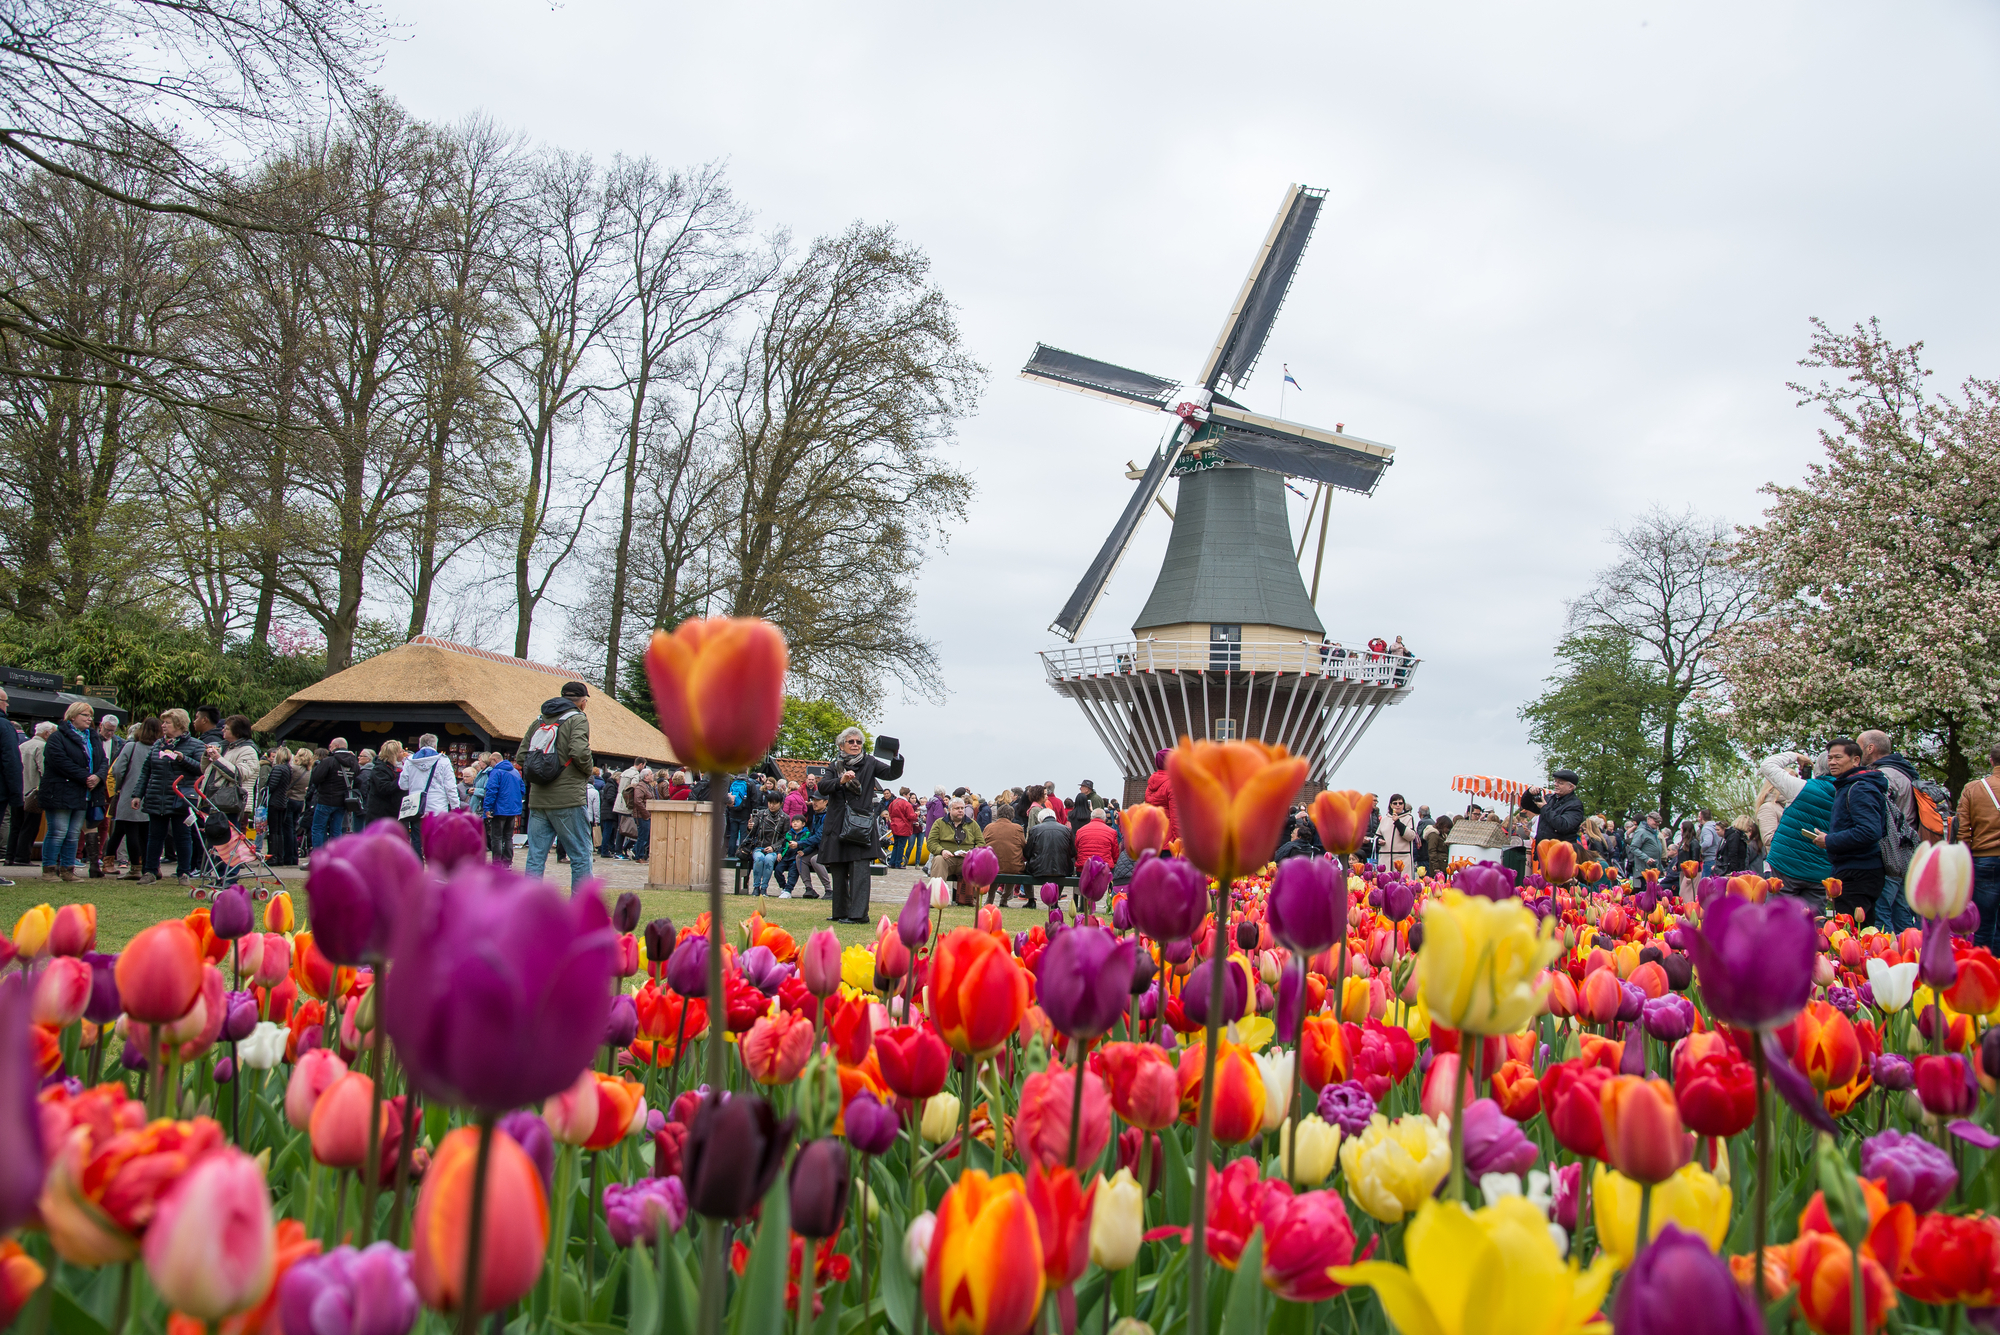 Holländische Windmühle im Park von Amsterdam